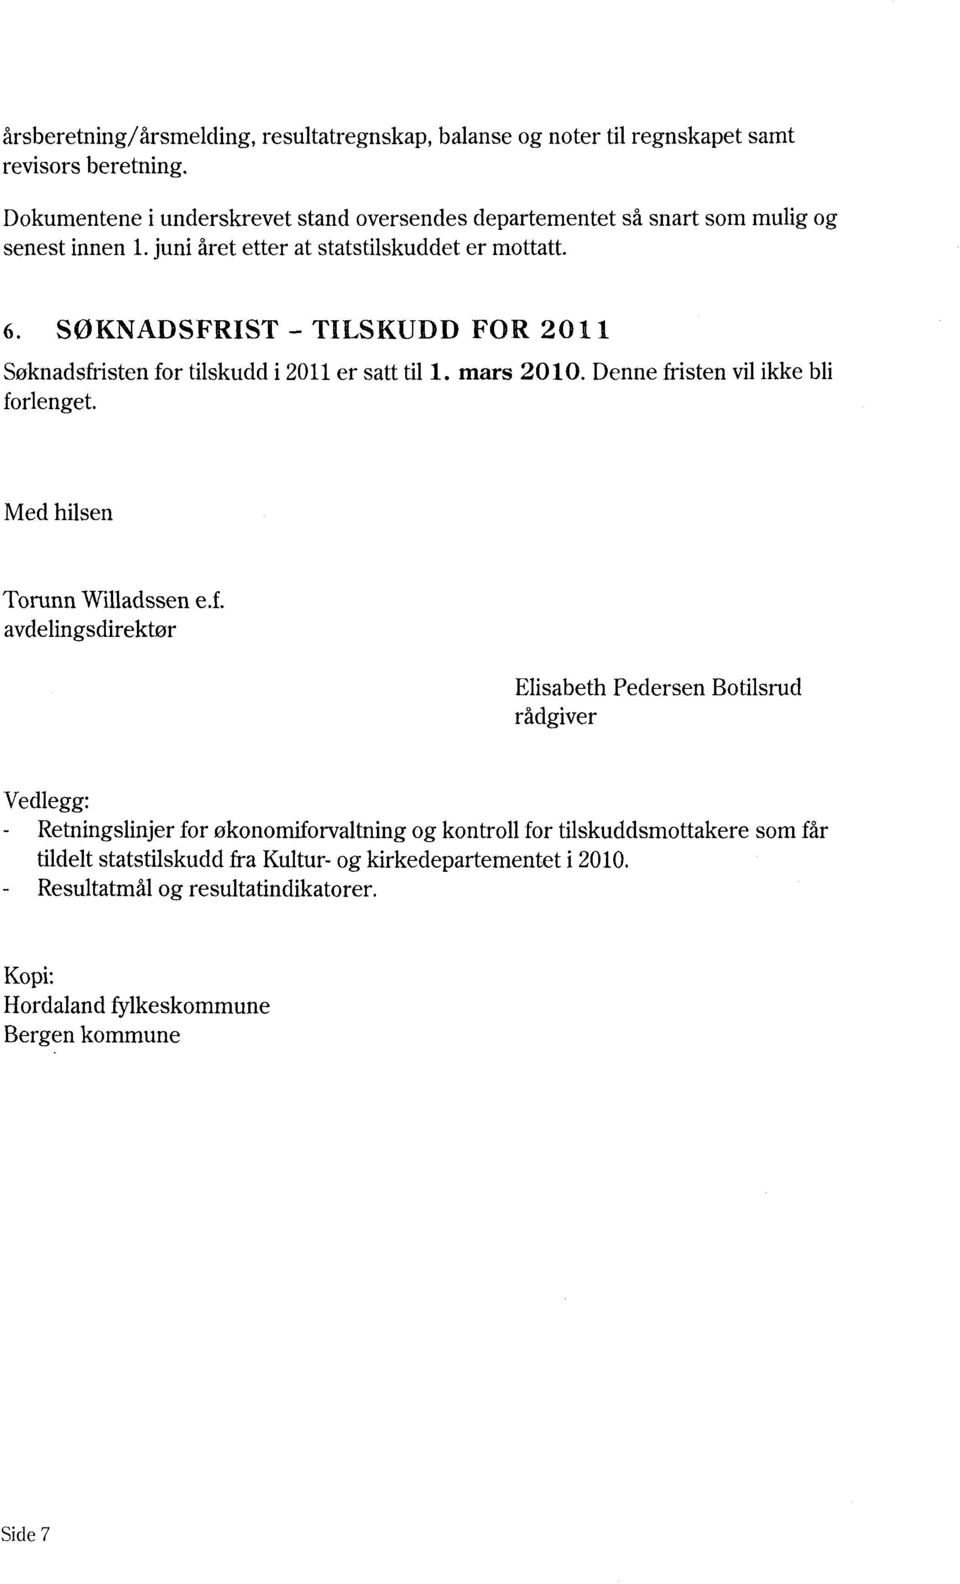 SØKNADSFRIST - TILSKUDD FOR 2011 Søknadsfristen for tilskudd i 2011 er satt til 1. mars 2010. Denne fristen vil ikke bli forlenget. Med hilsen Torunn Willadssen e.